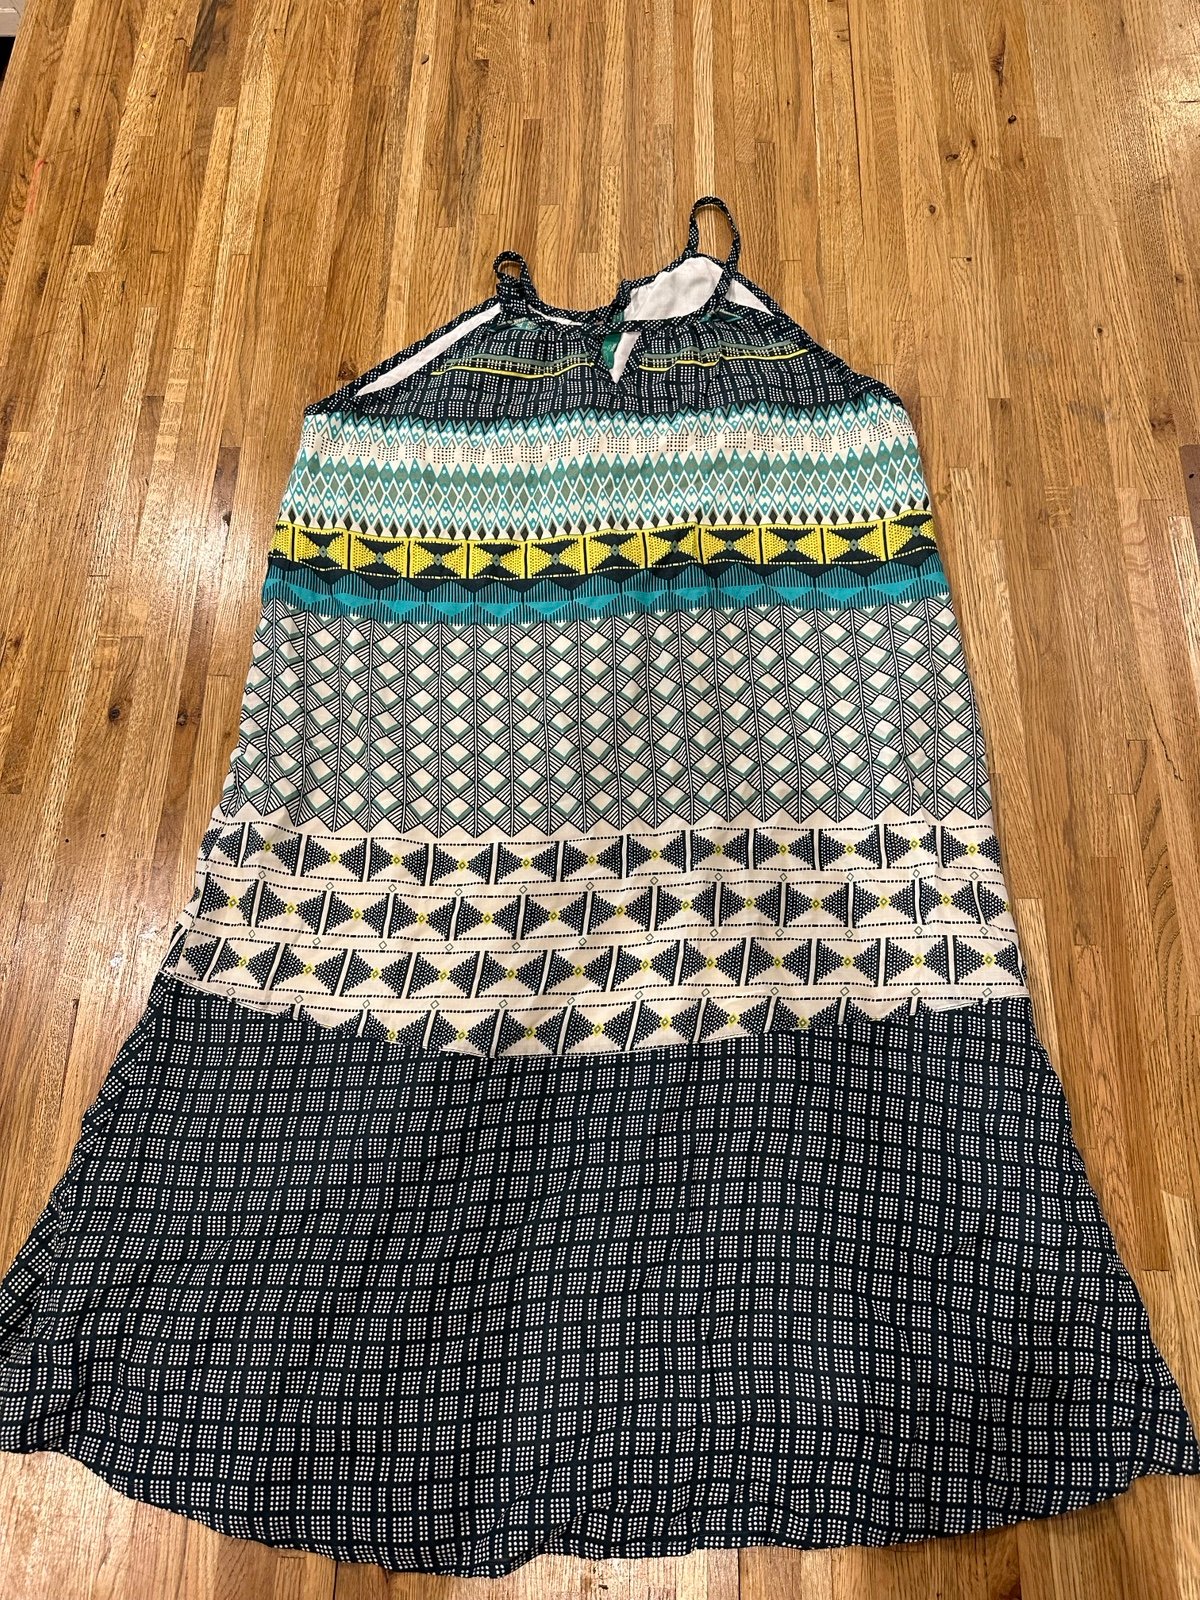 Gorgeous Prana Nara Keyhole Dress - Never Worn p9Kd3OSz